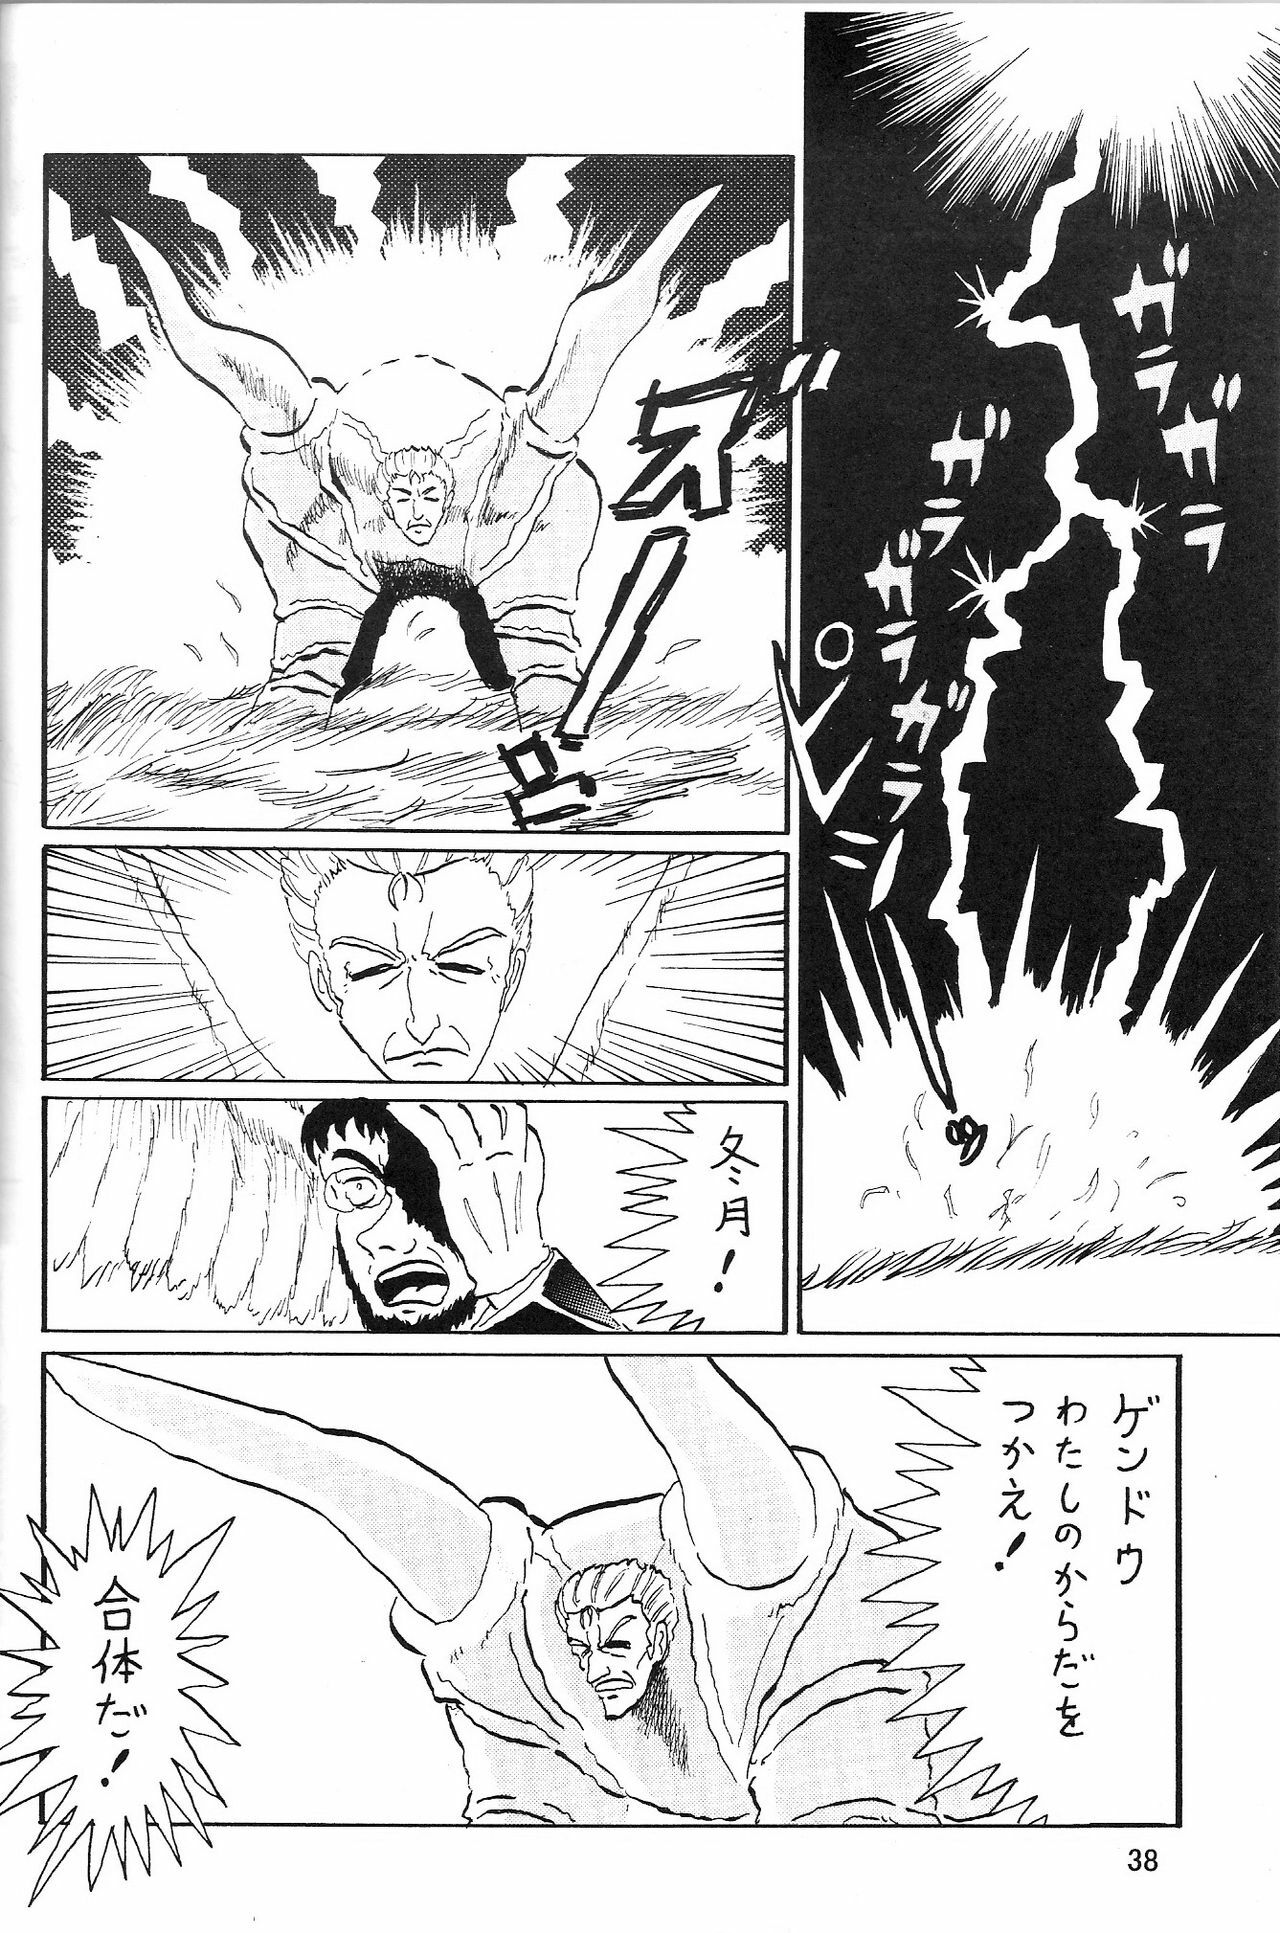 (COMIC1) [Thirty Saver Street 2D Shooting (Maki Hideto, Sawara Kazumitsu, Yonige-ya No Kyou)] Second Uchuu Keikaku 2 (Neon Genesis Evangelion) page 38 full